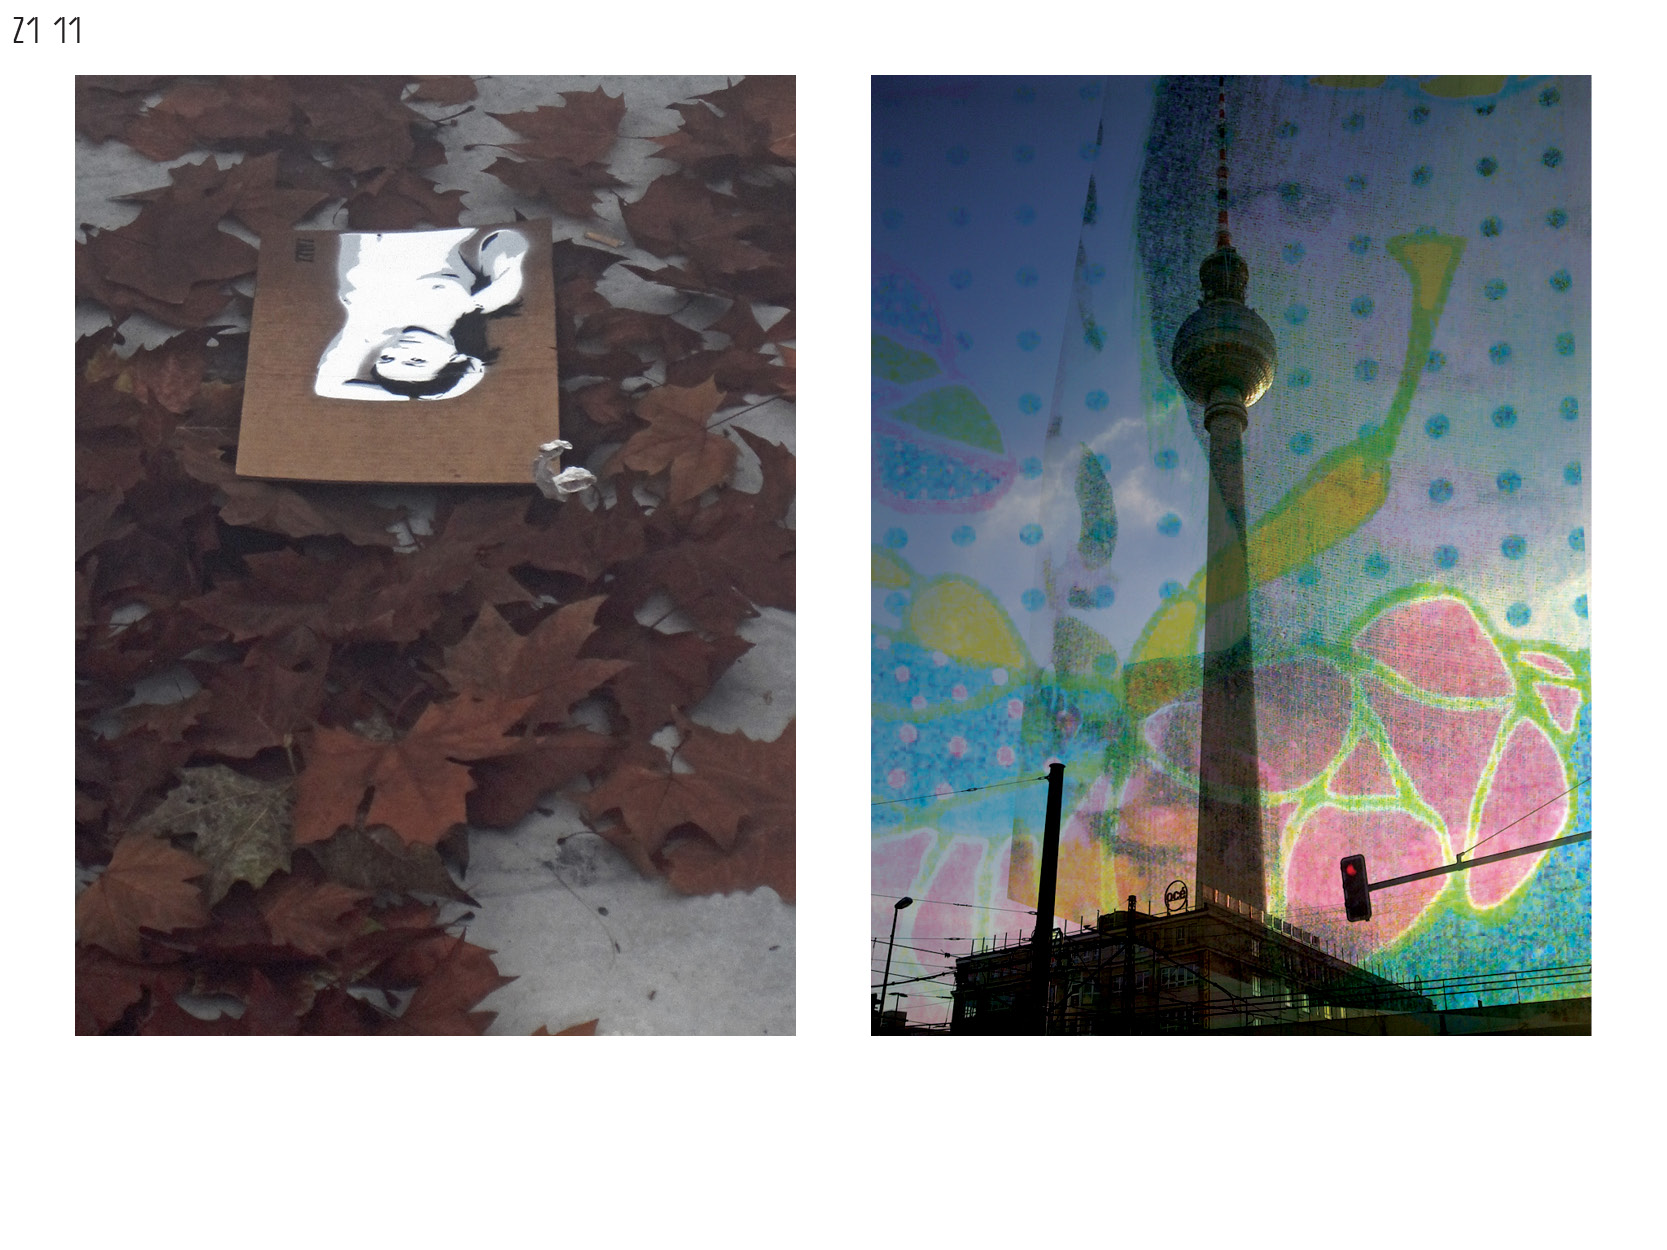 Gerrit-Schweiger-Dialog-Städte-Paris-Berlin-Jessica-Blank-Experiment-Fotoserie-Tagebuch-visuelle-Kommunikation-36